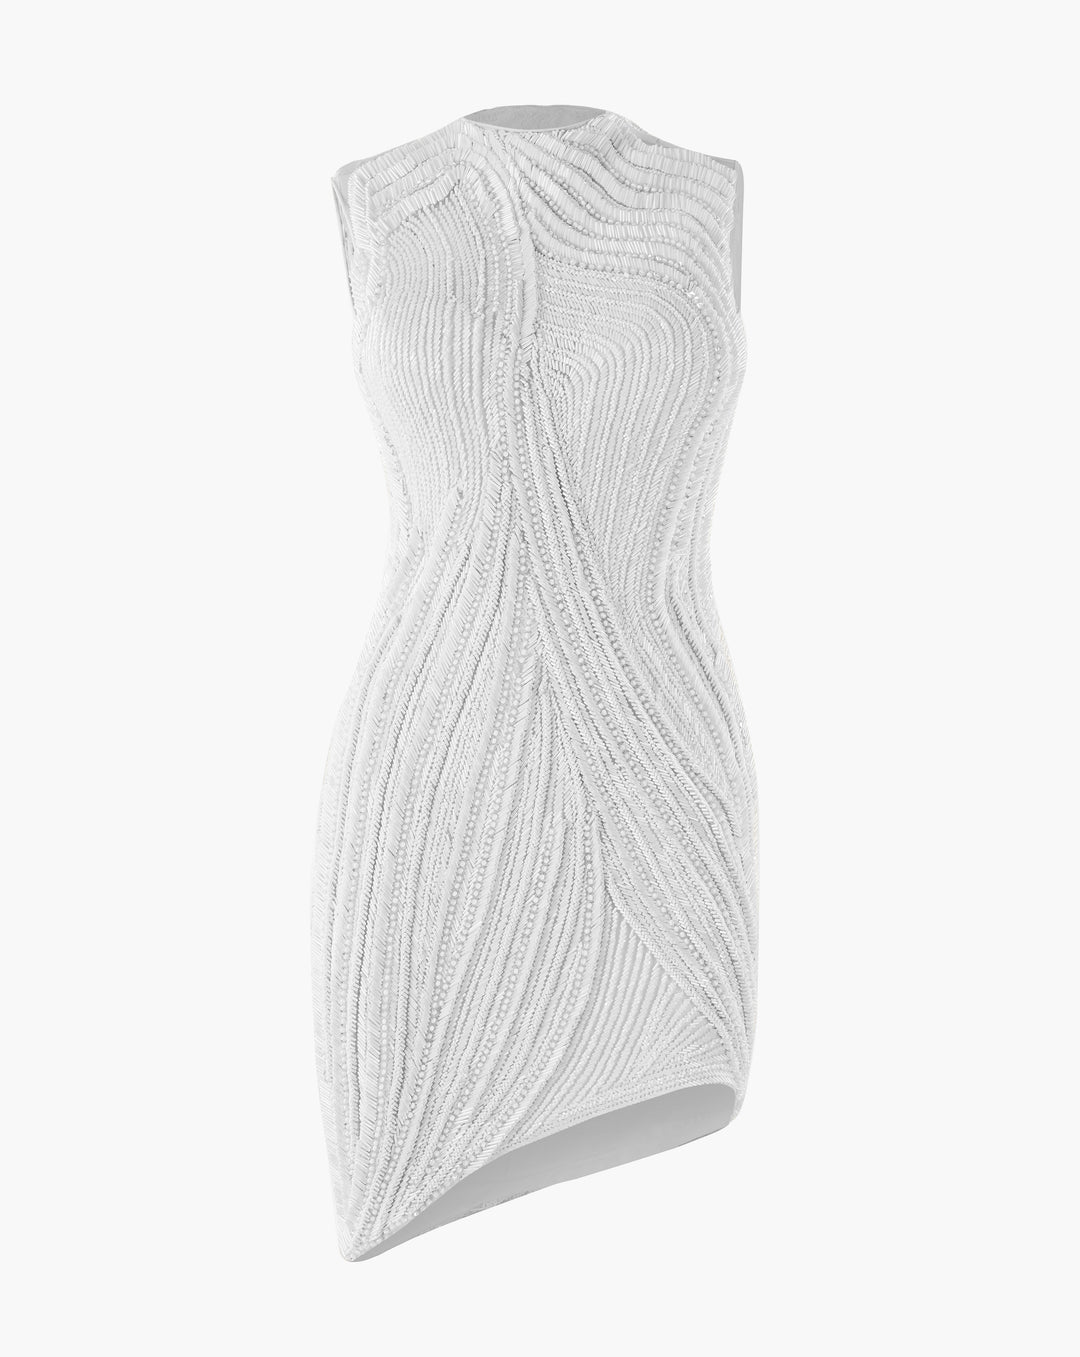 The White Asymmetric Dress